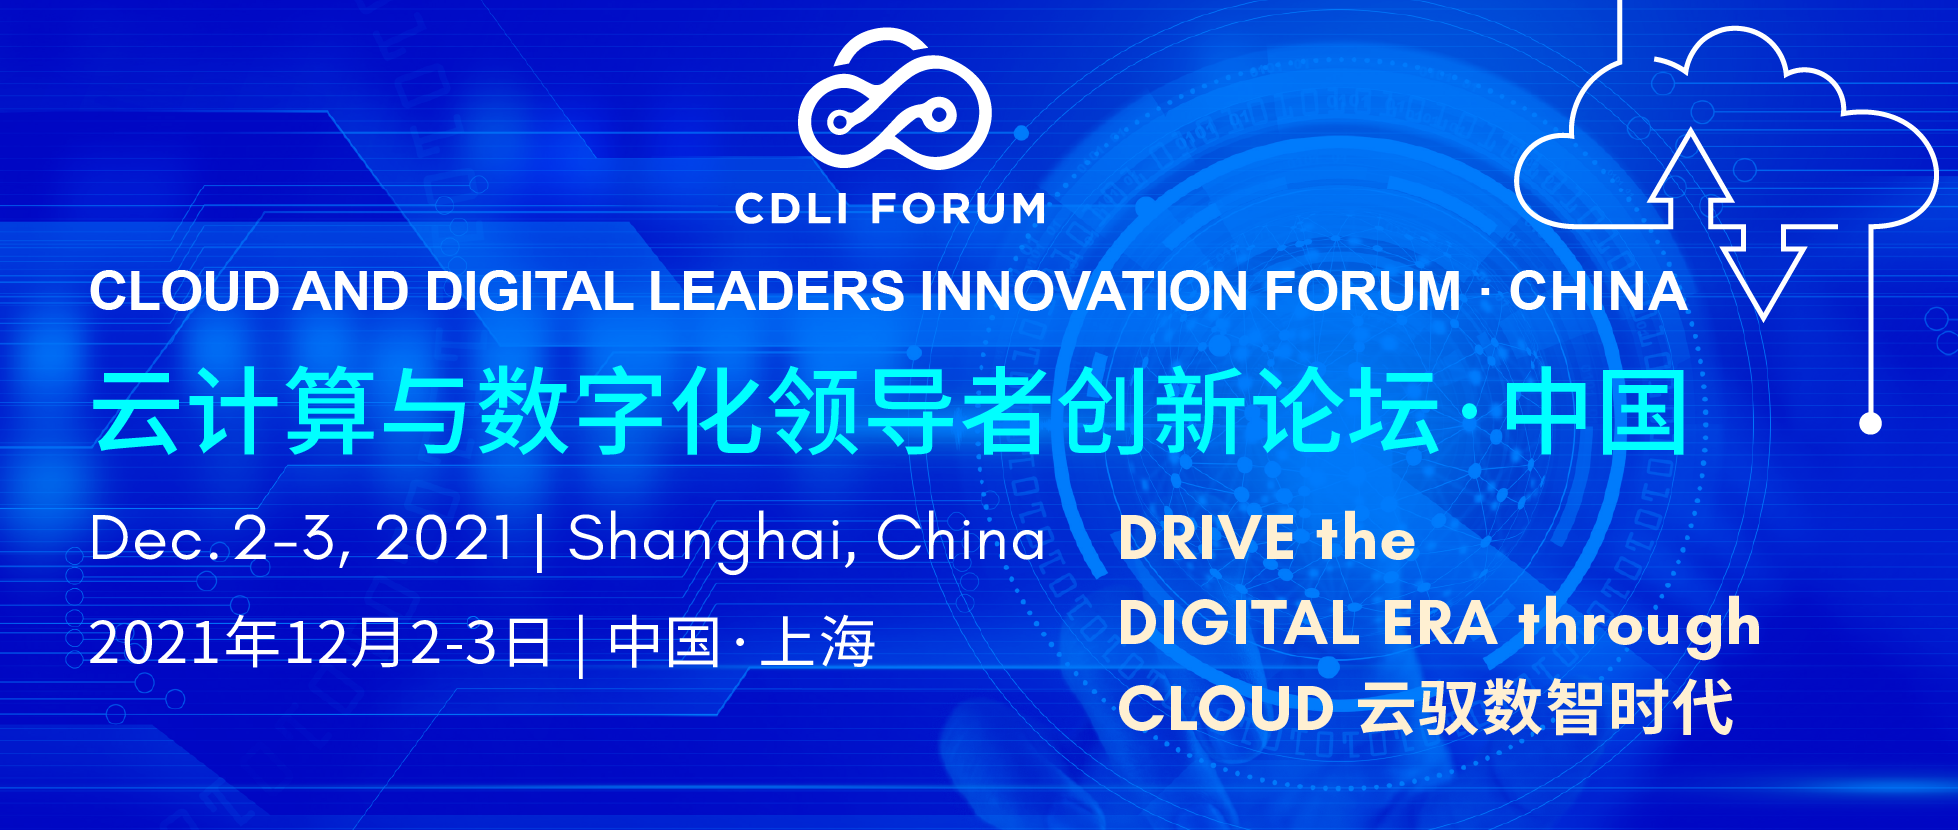 云计算与数字化领导者创新论坛·中国